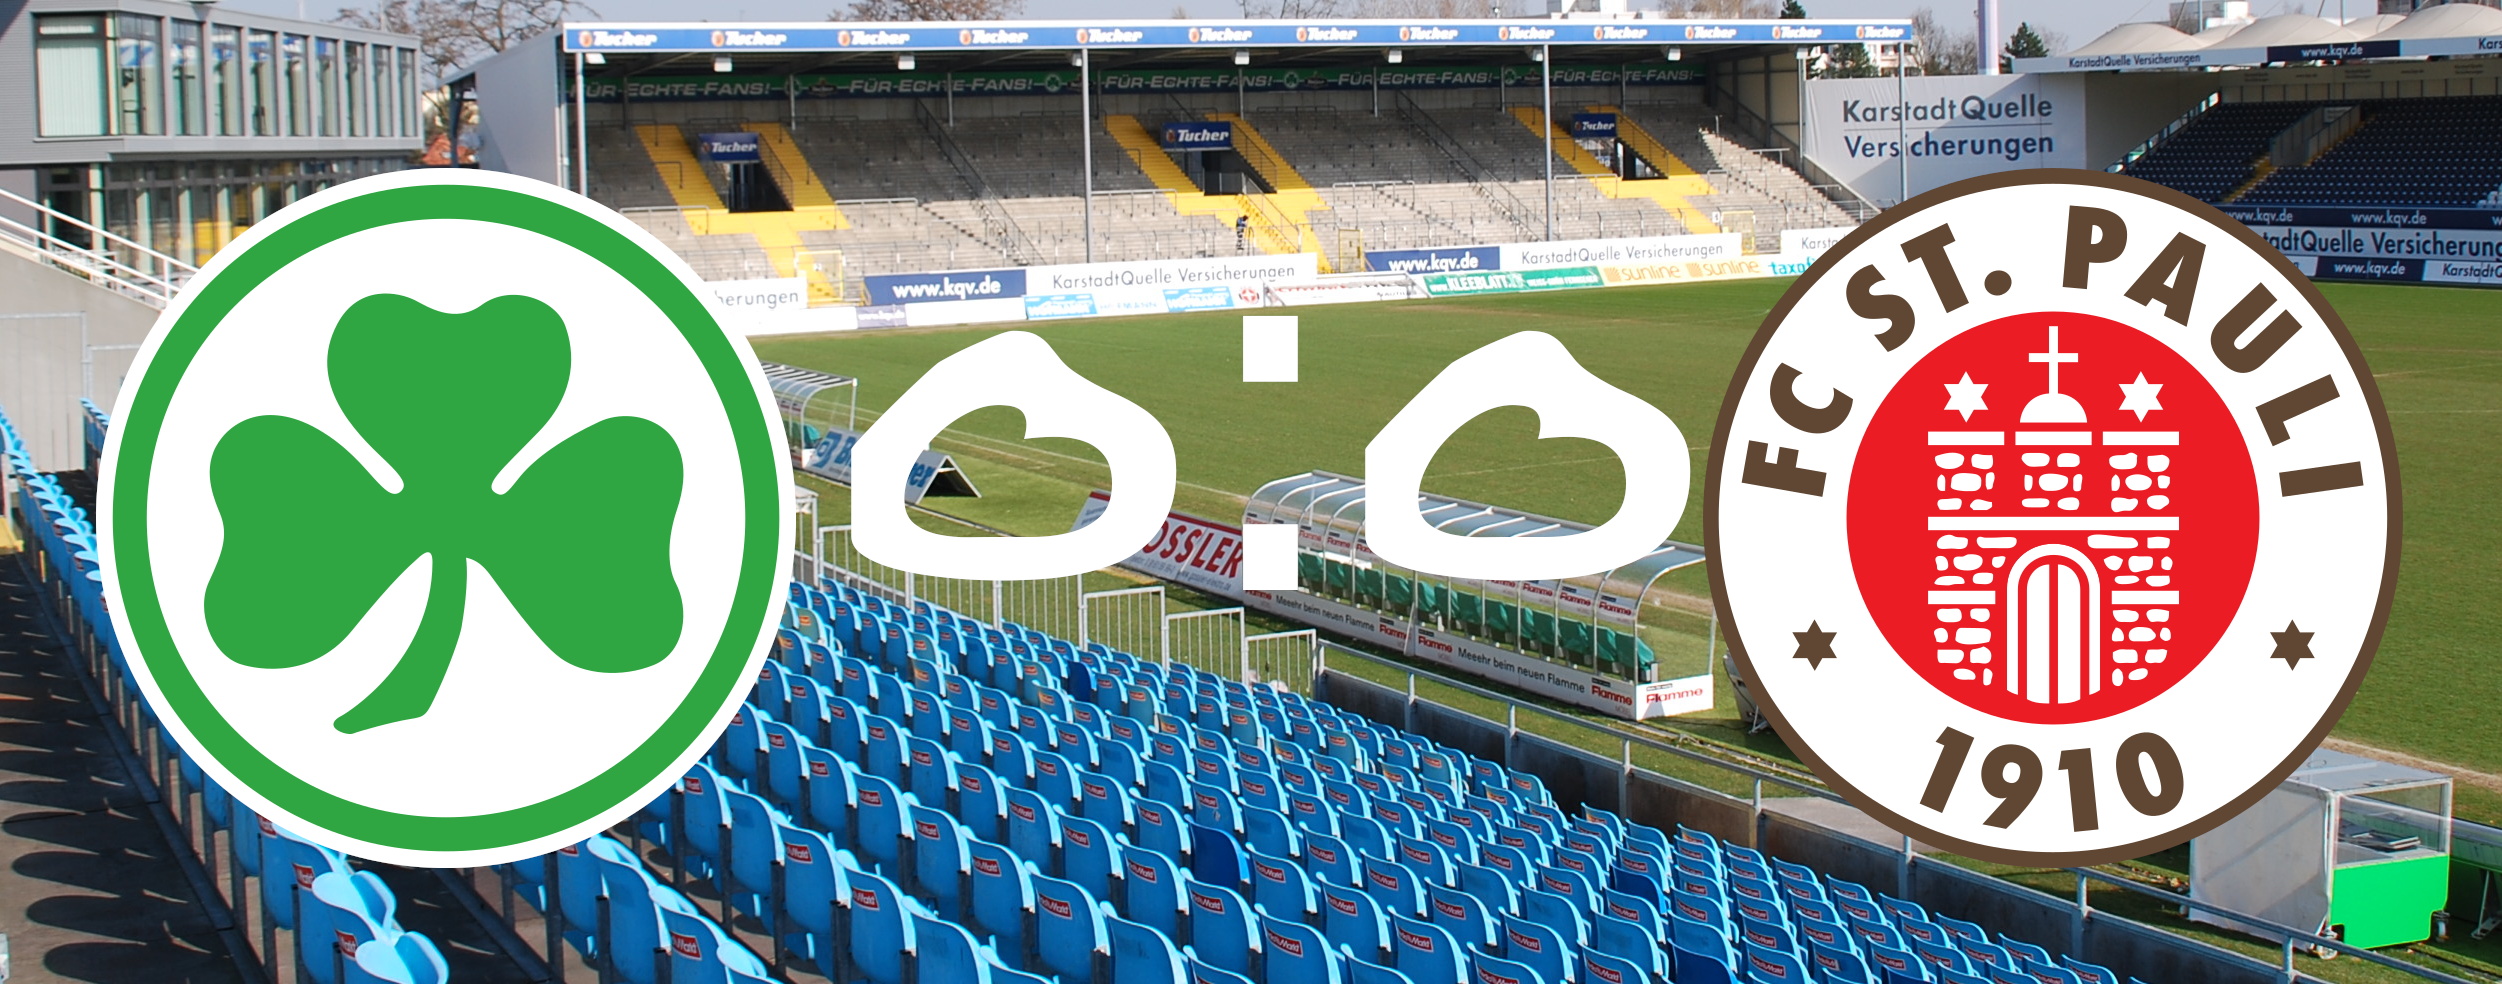 Zu sehen ist ein Foto des leeren Fürther Stadions als Hintergrund, davor das Wappen von Fürth und St. Pauli und ein 0:0 als Ergebnis